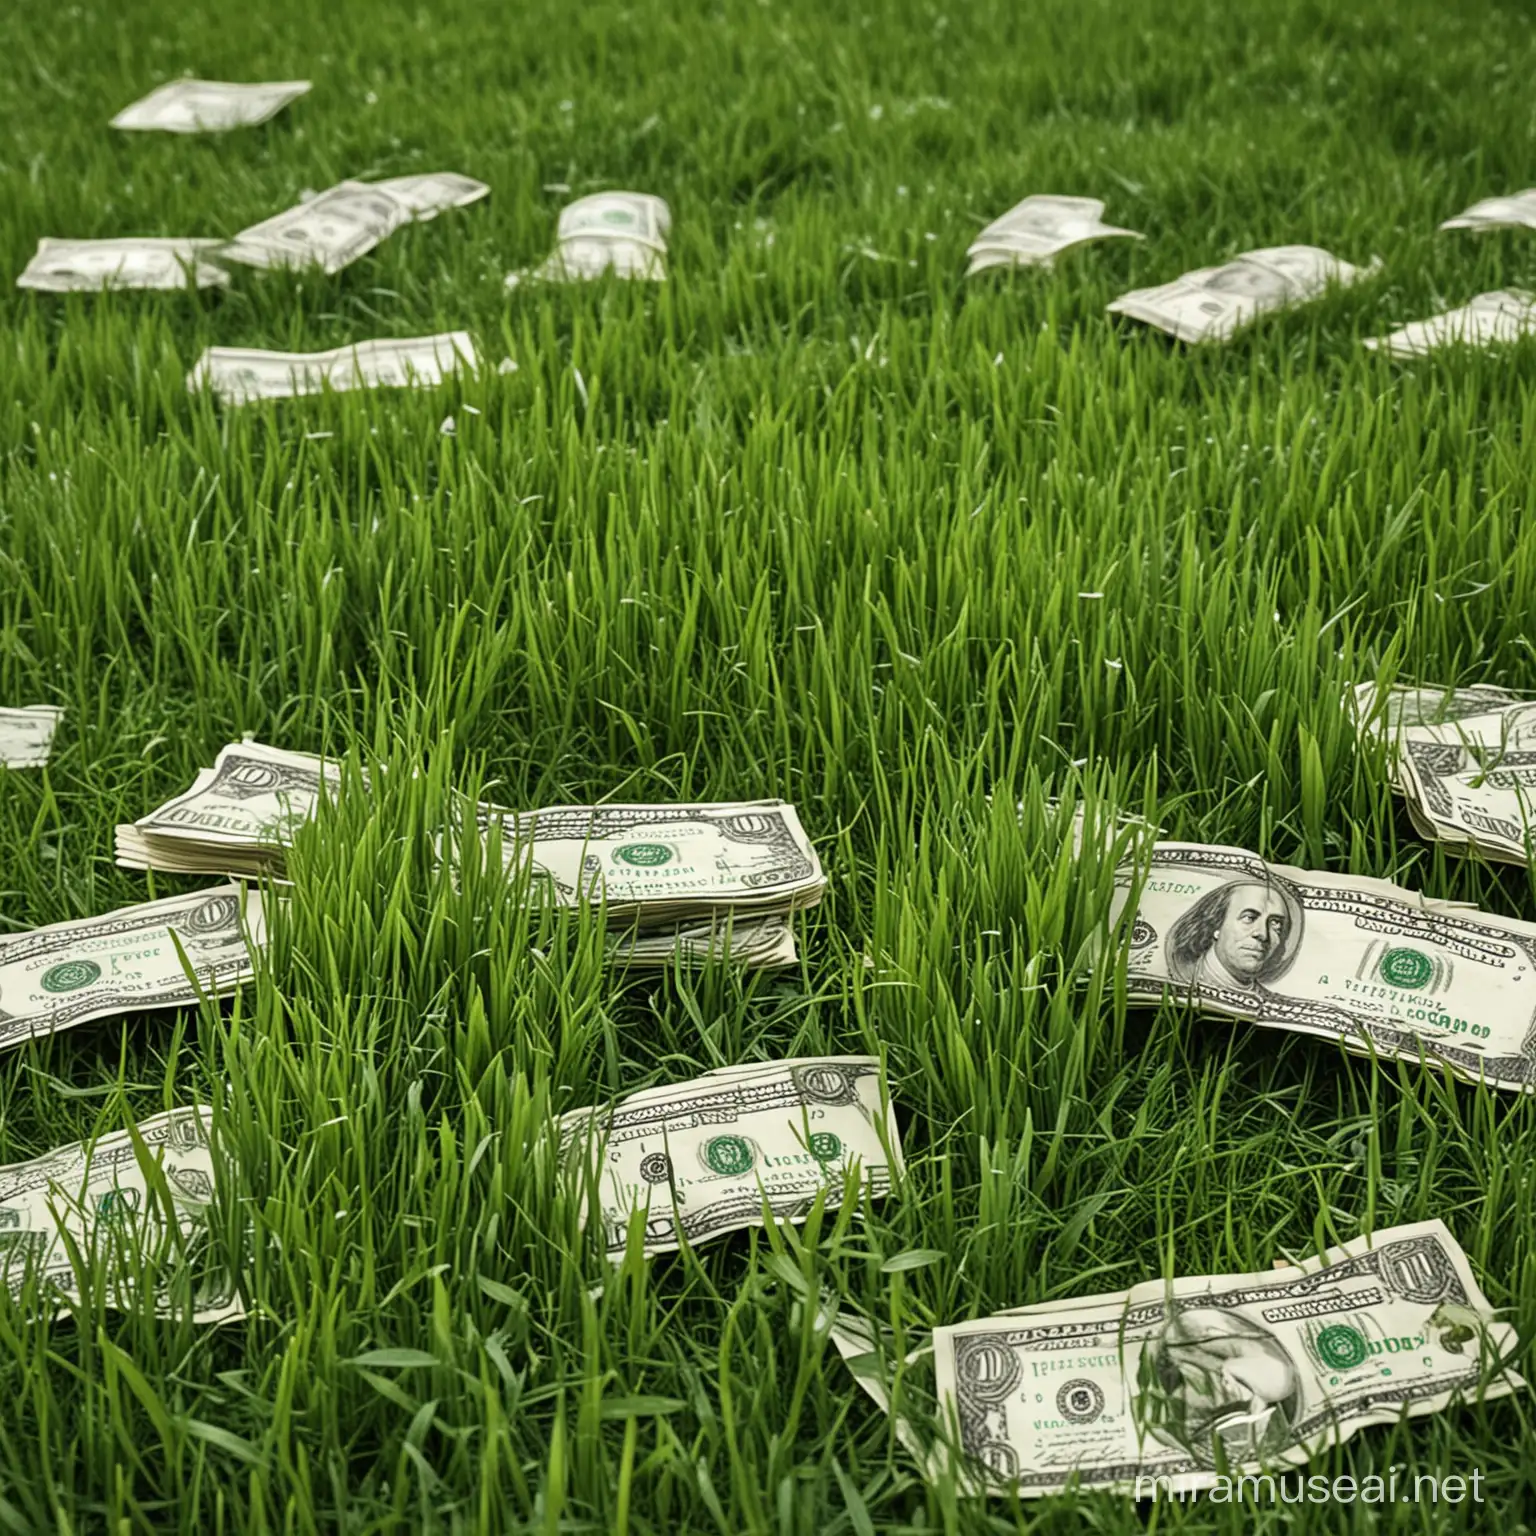 grass as money

